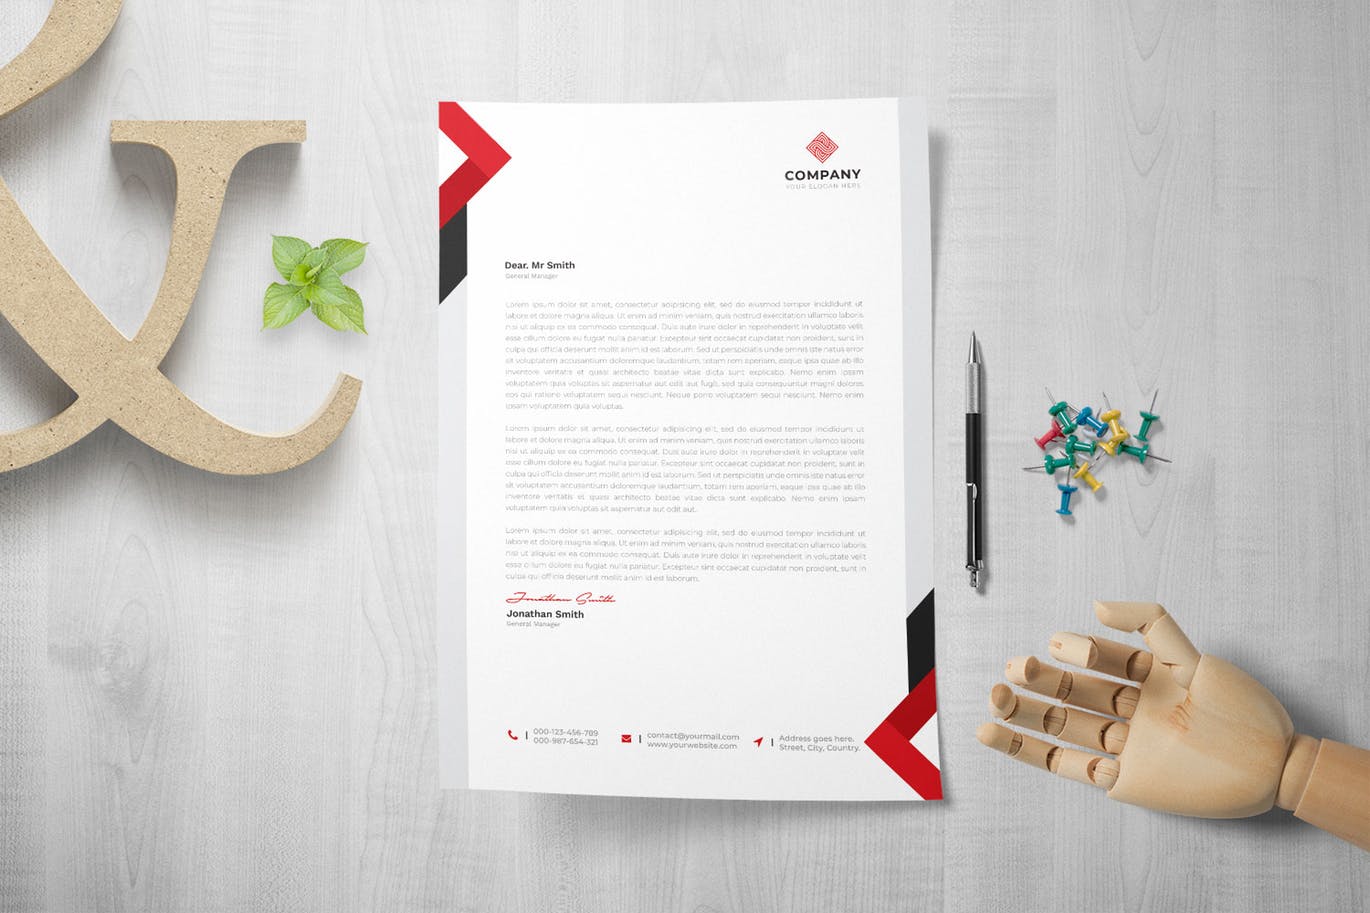 网络科技/技术开发企业信纸排版模板 Letterhead插图1